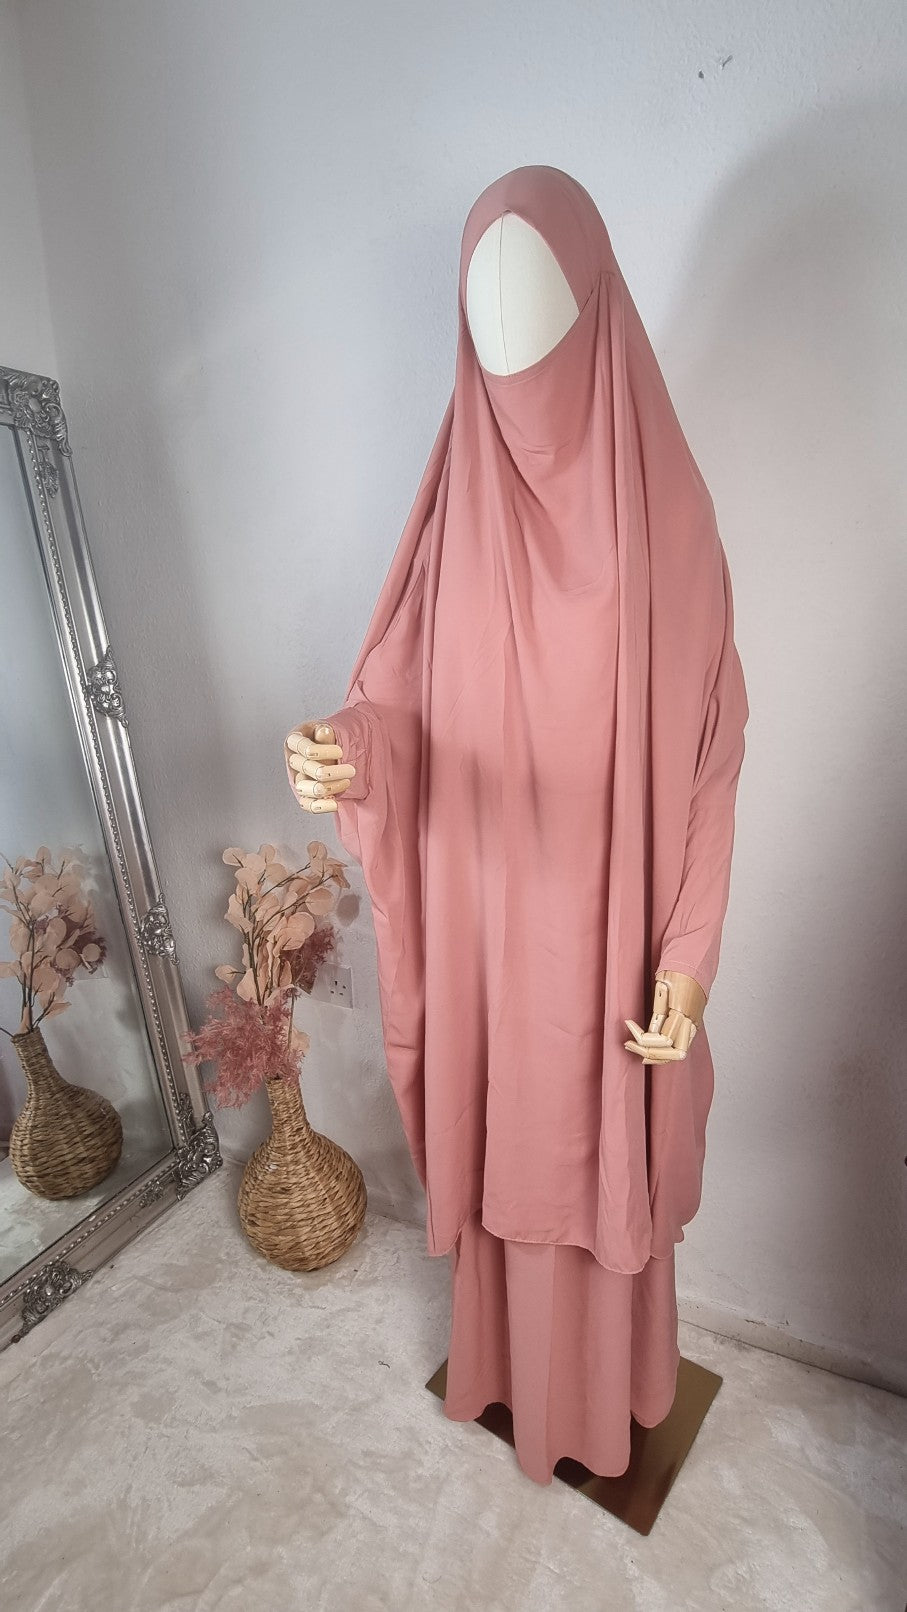 OnHerDeen 2 piece jilbab soft pink